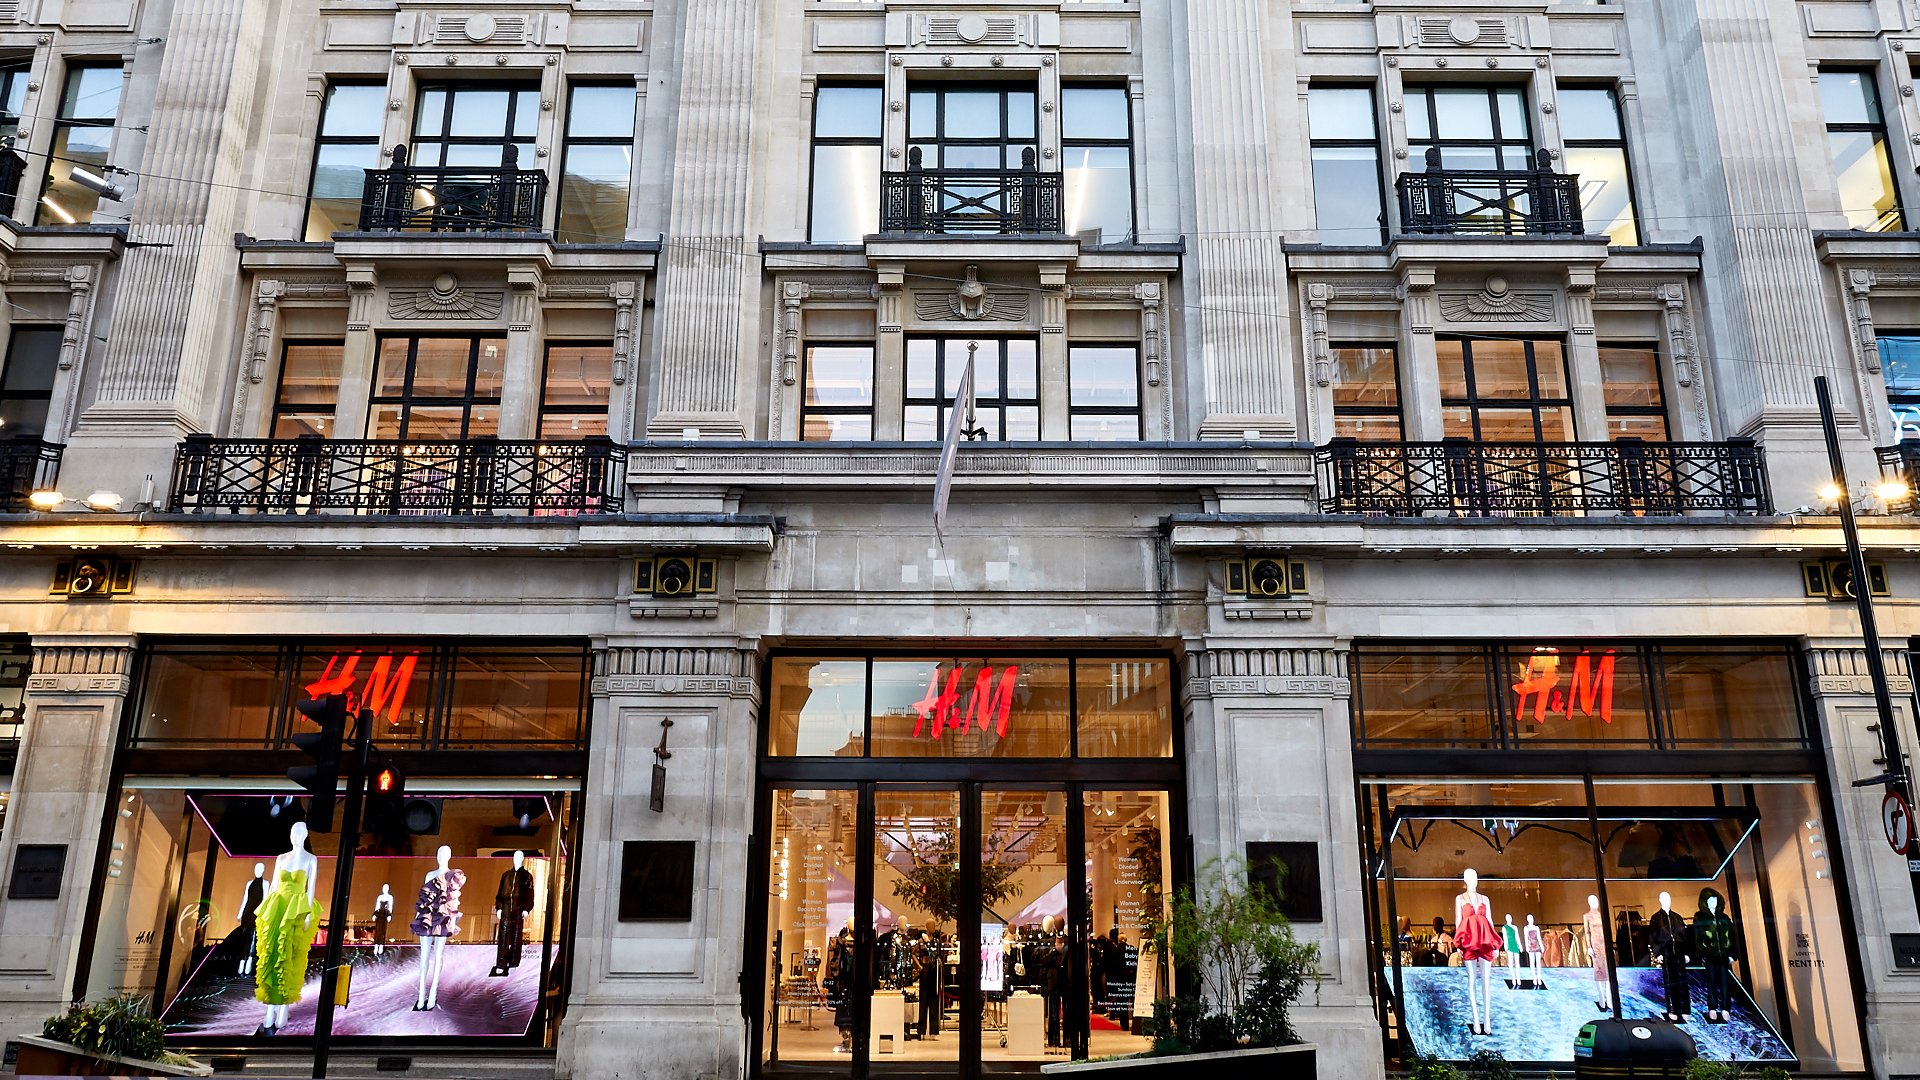  H&M intenţionează să vândă haine şi accesorii la mâna a doua la magazinul său emblematic din Londra